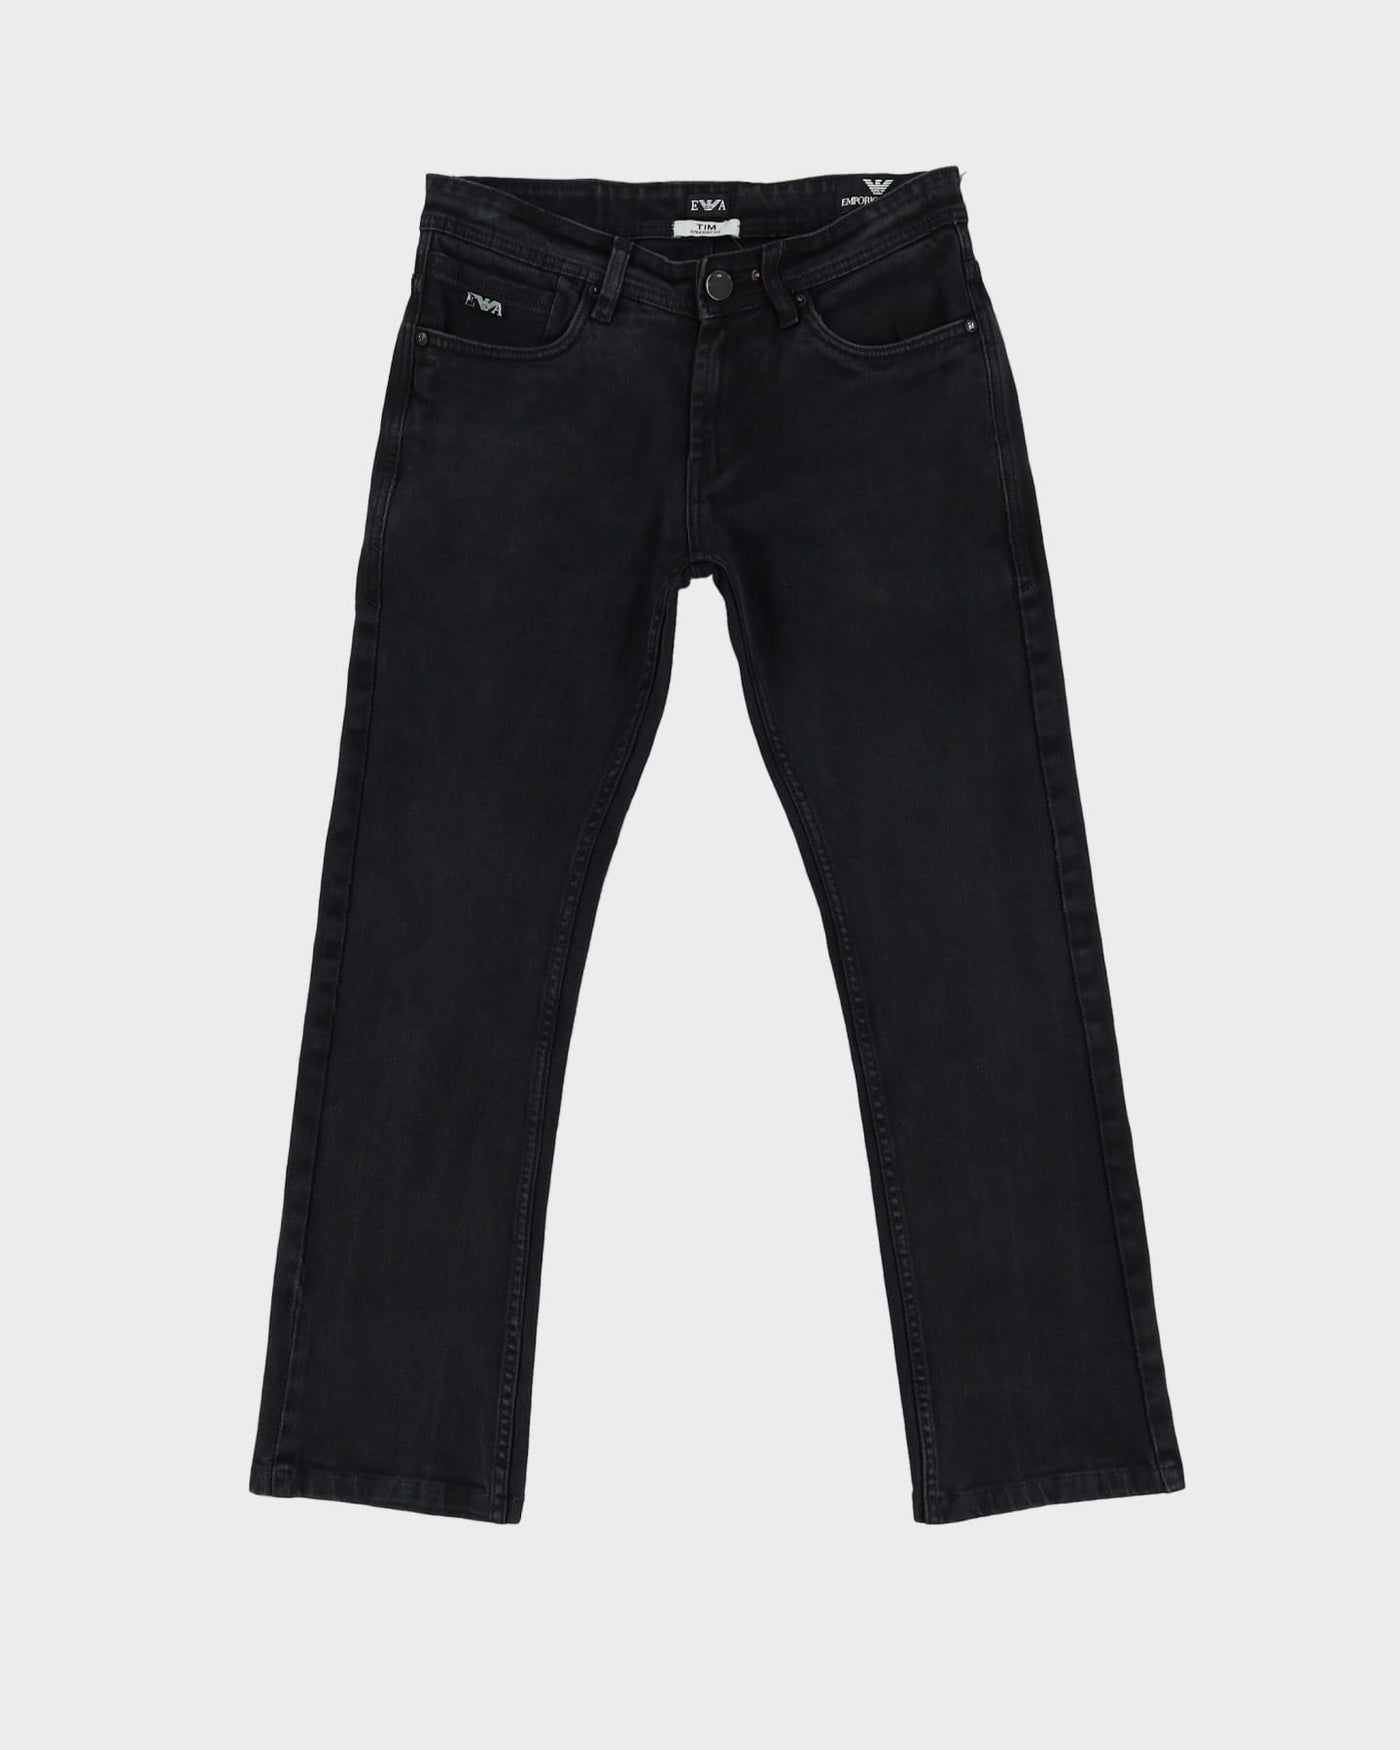 Emporio Armani Faded Black Straight Fit Jeans - W28 L27